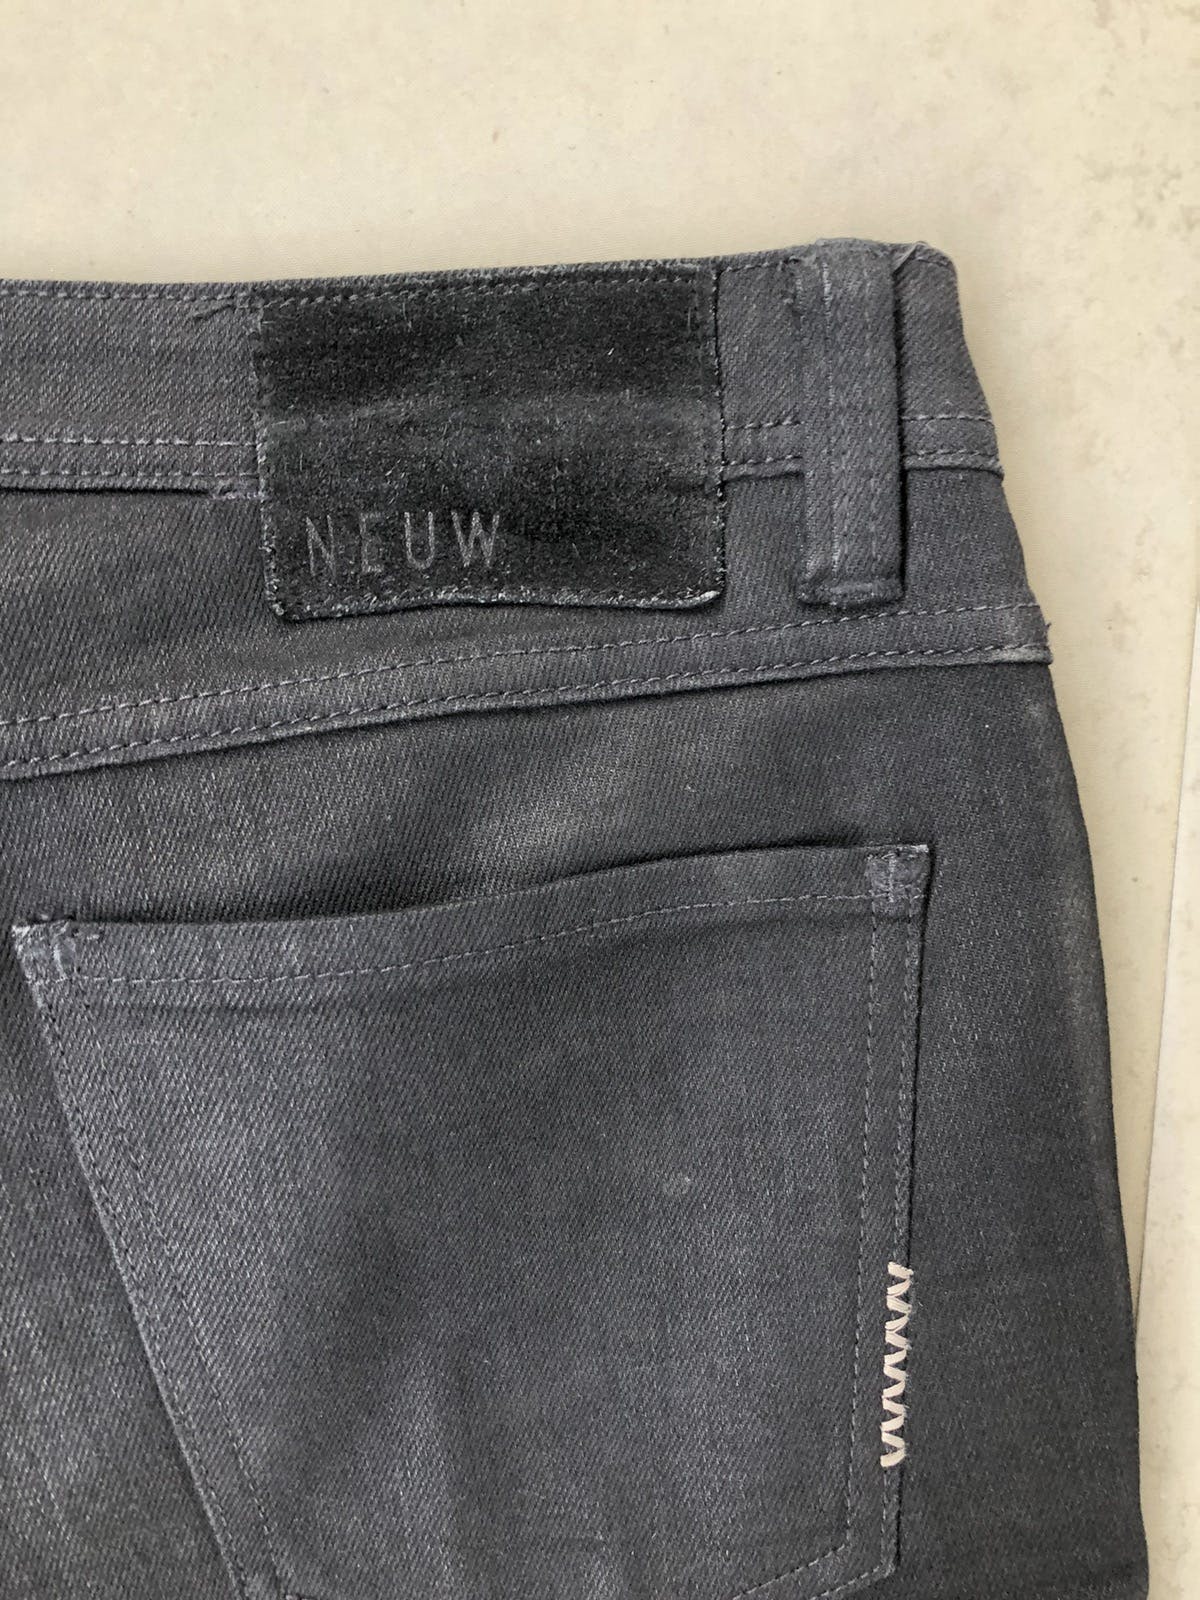 Neuw denim Iggy skinny black jeans - 3